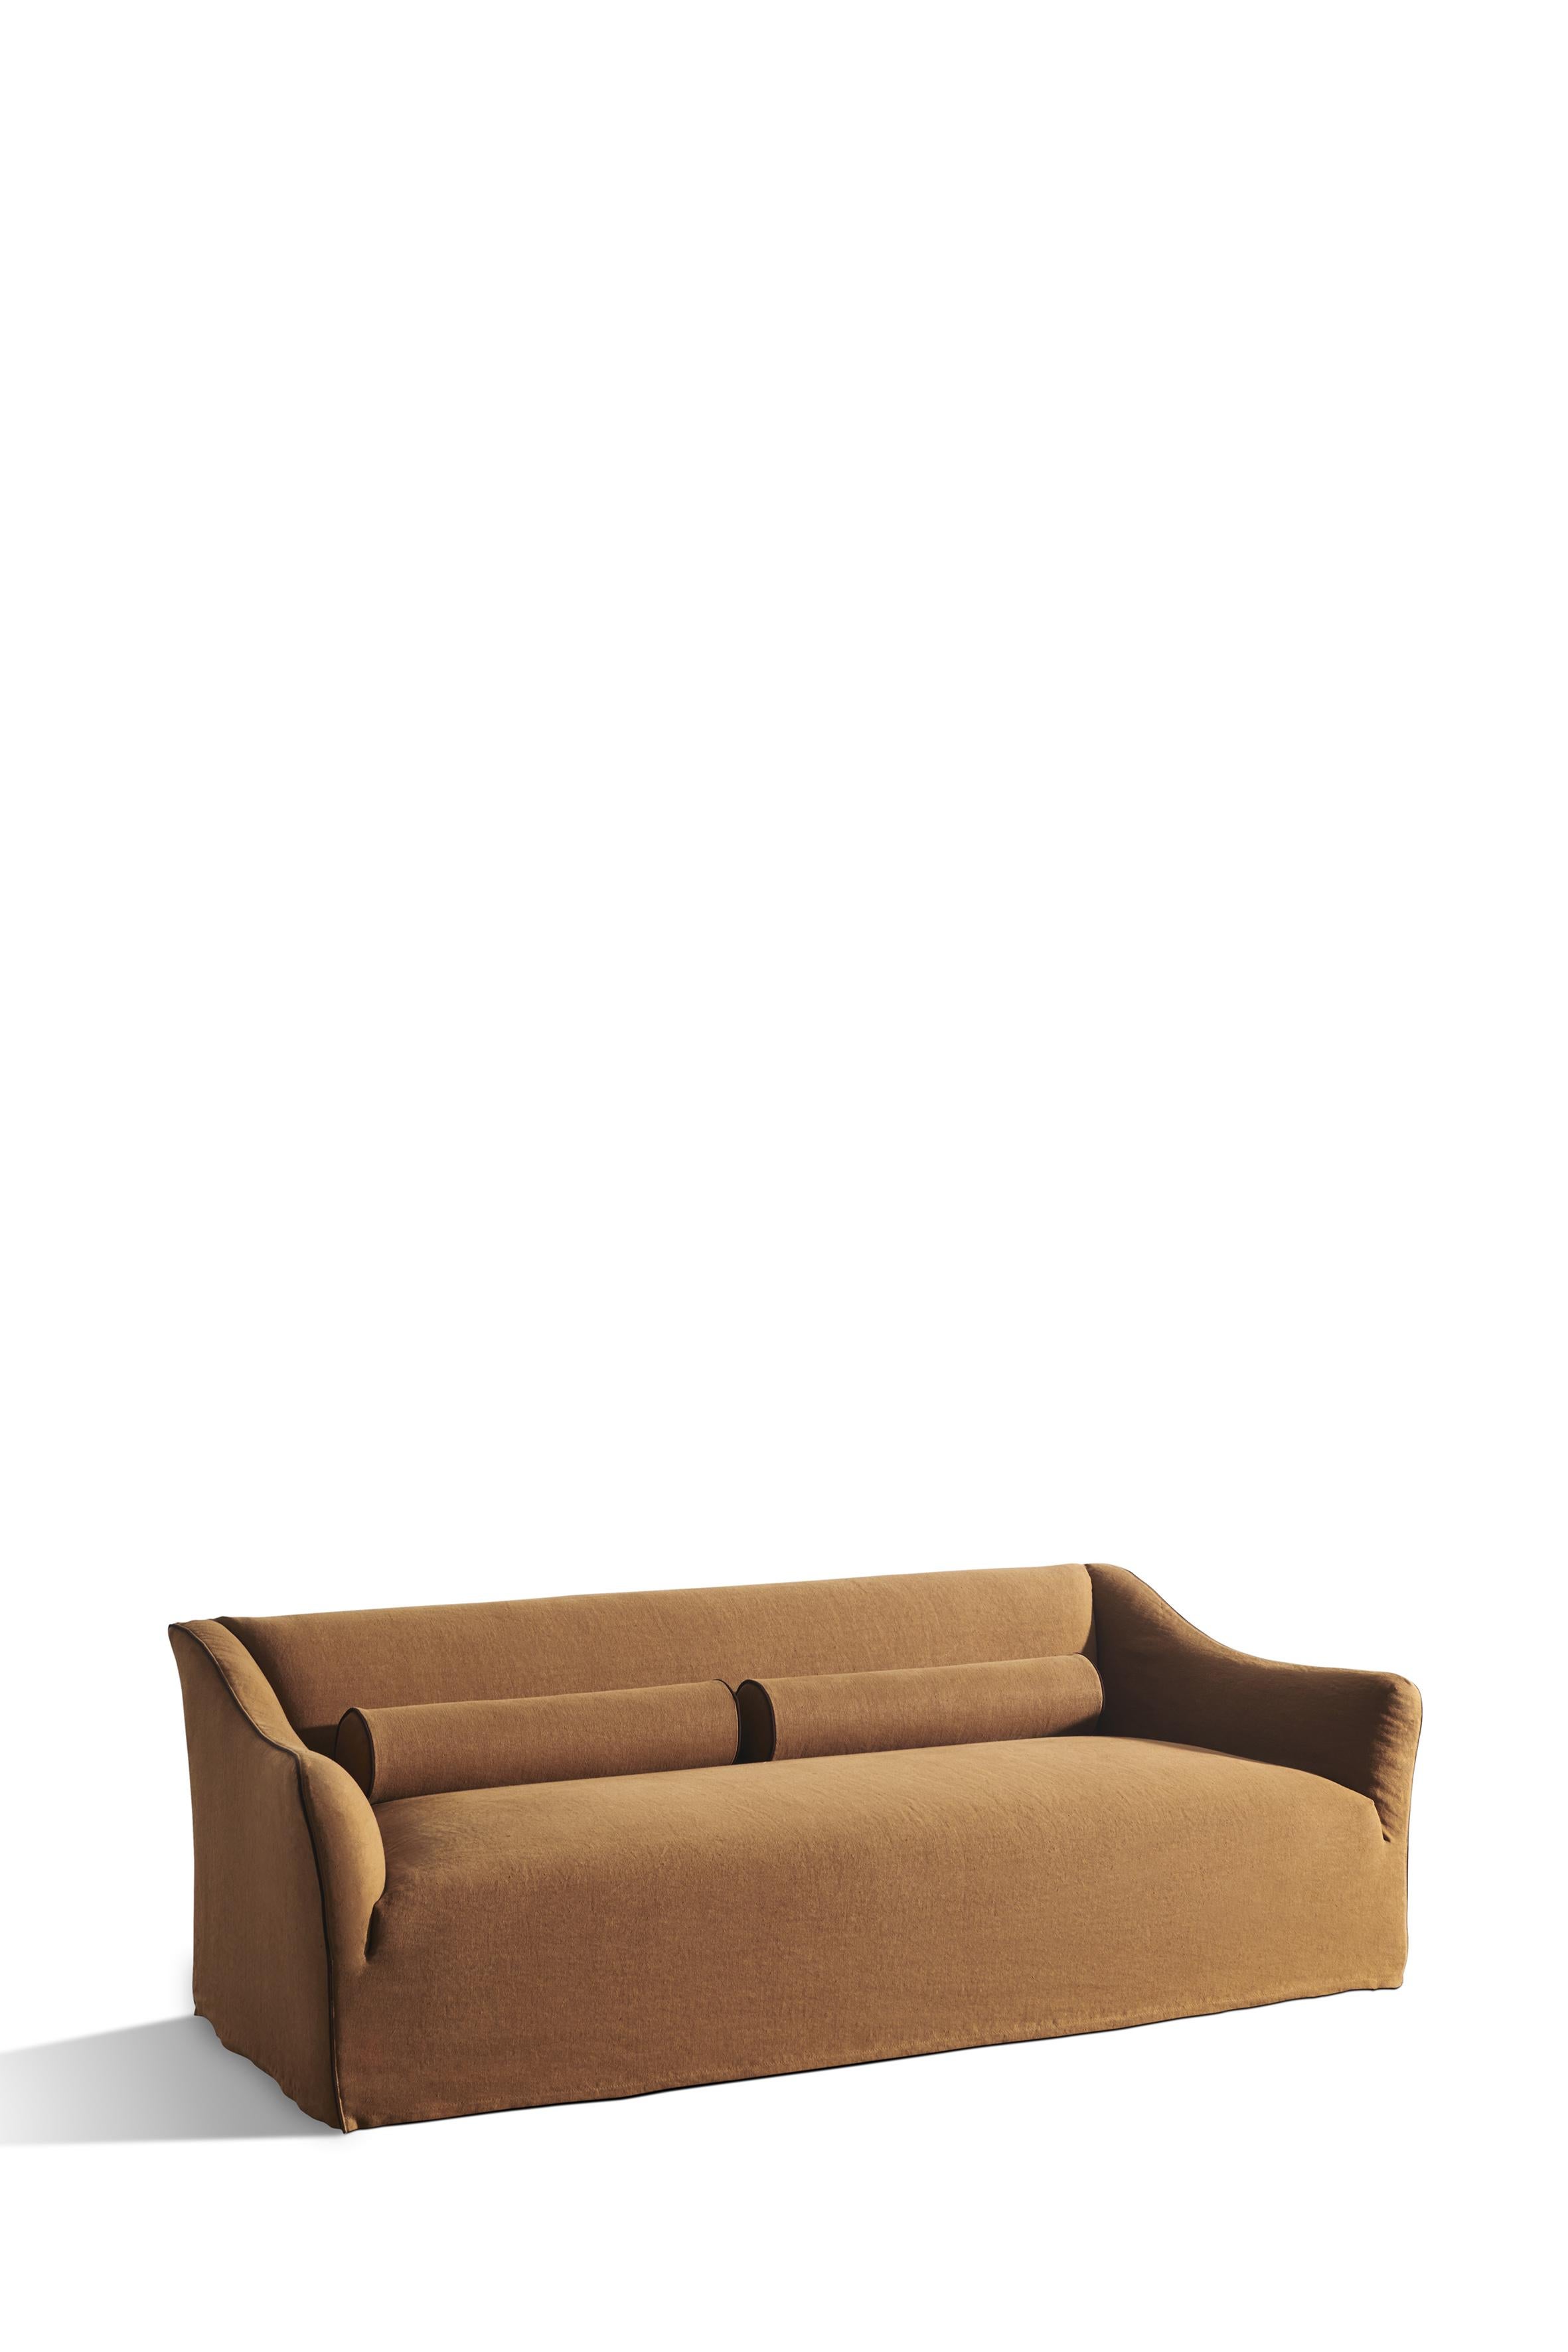 Avec ses lignes équilibrées, la collection de meubles rembourrés Saia est créée à partir d'un idéal classique réinterprété dans une tonalité contemporaine. Le nom, qui signifie 